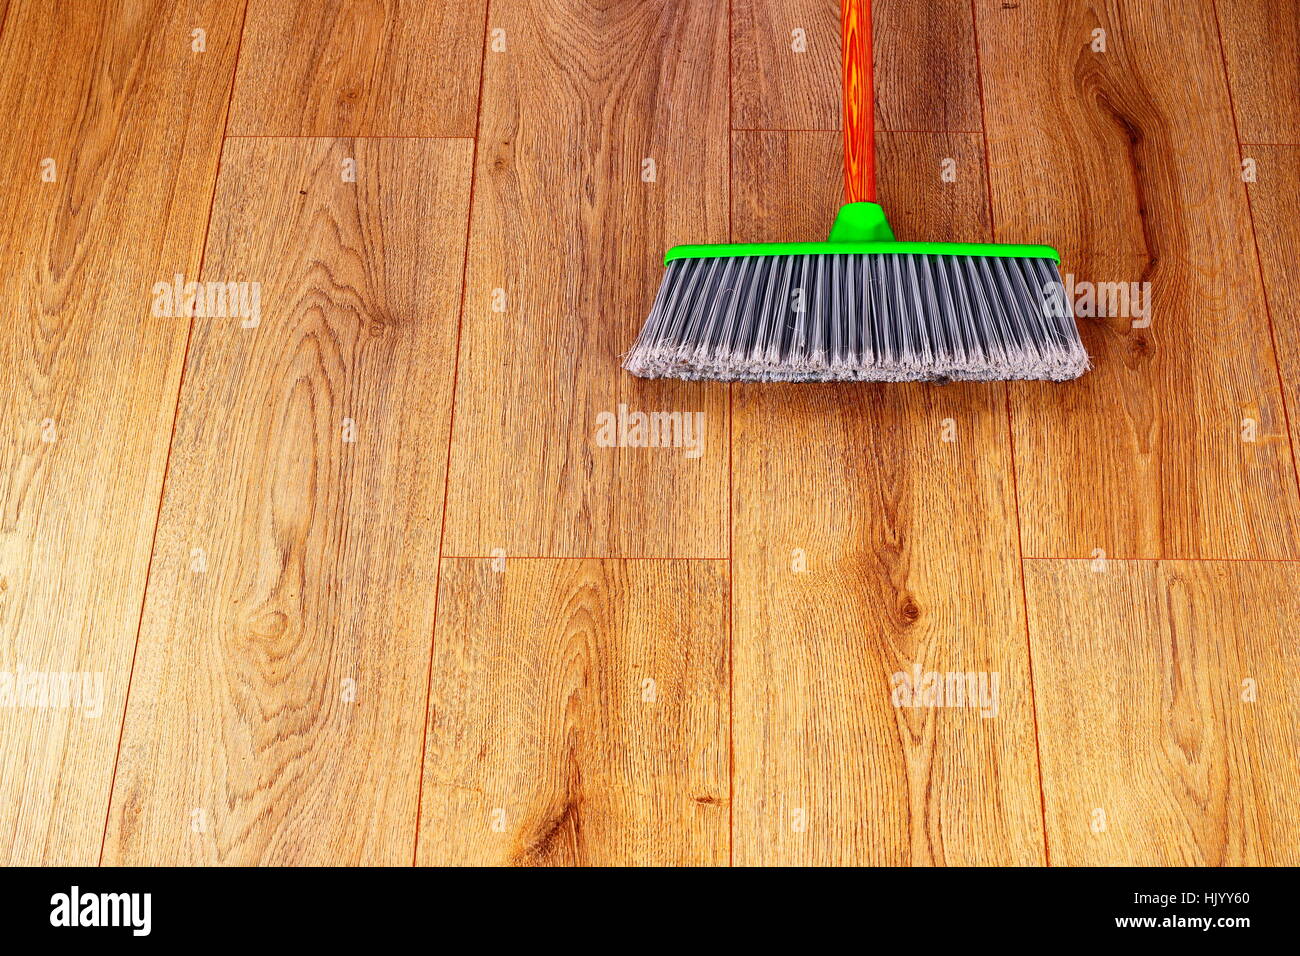 Reinigung den inneren Holzboden mit grünen Kunststoff Besen Stockfoto